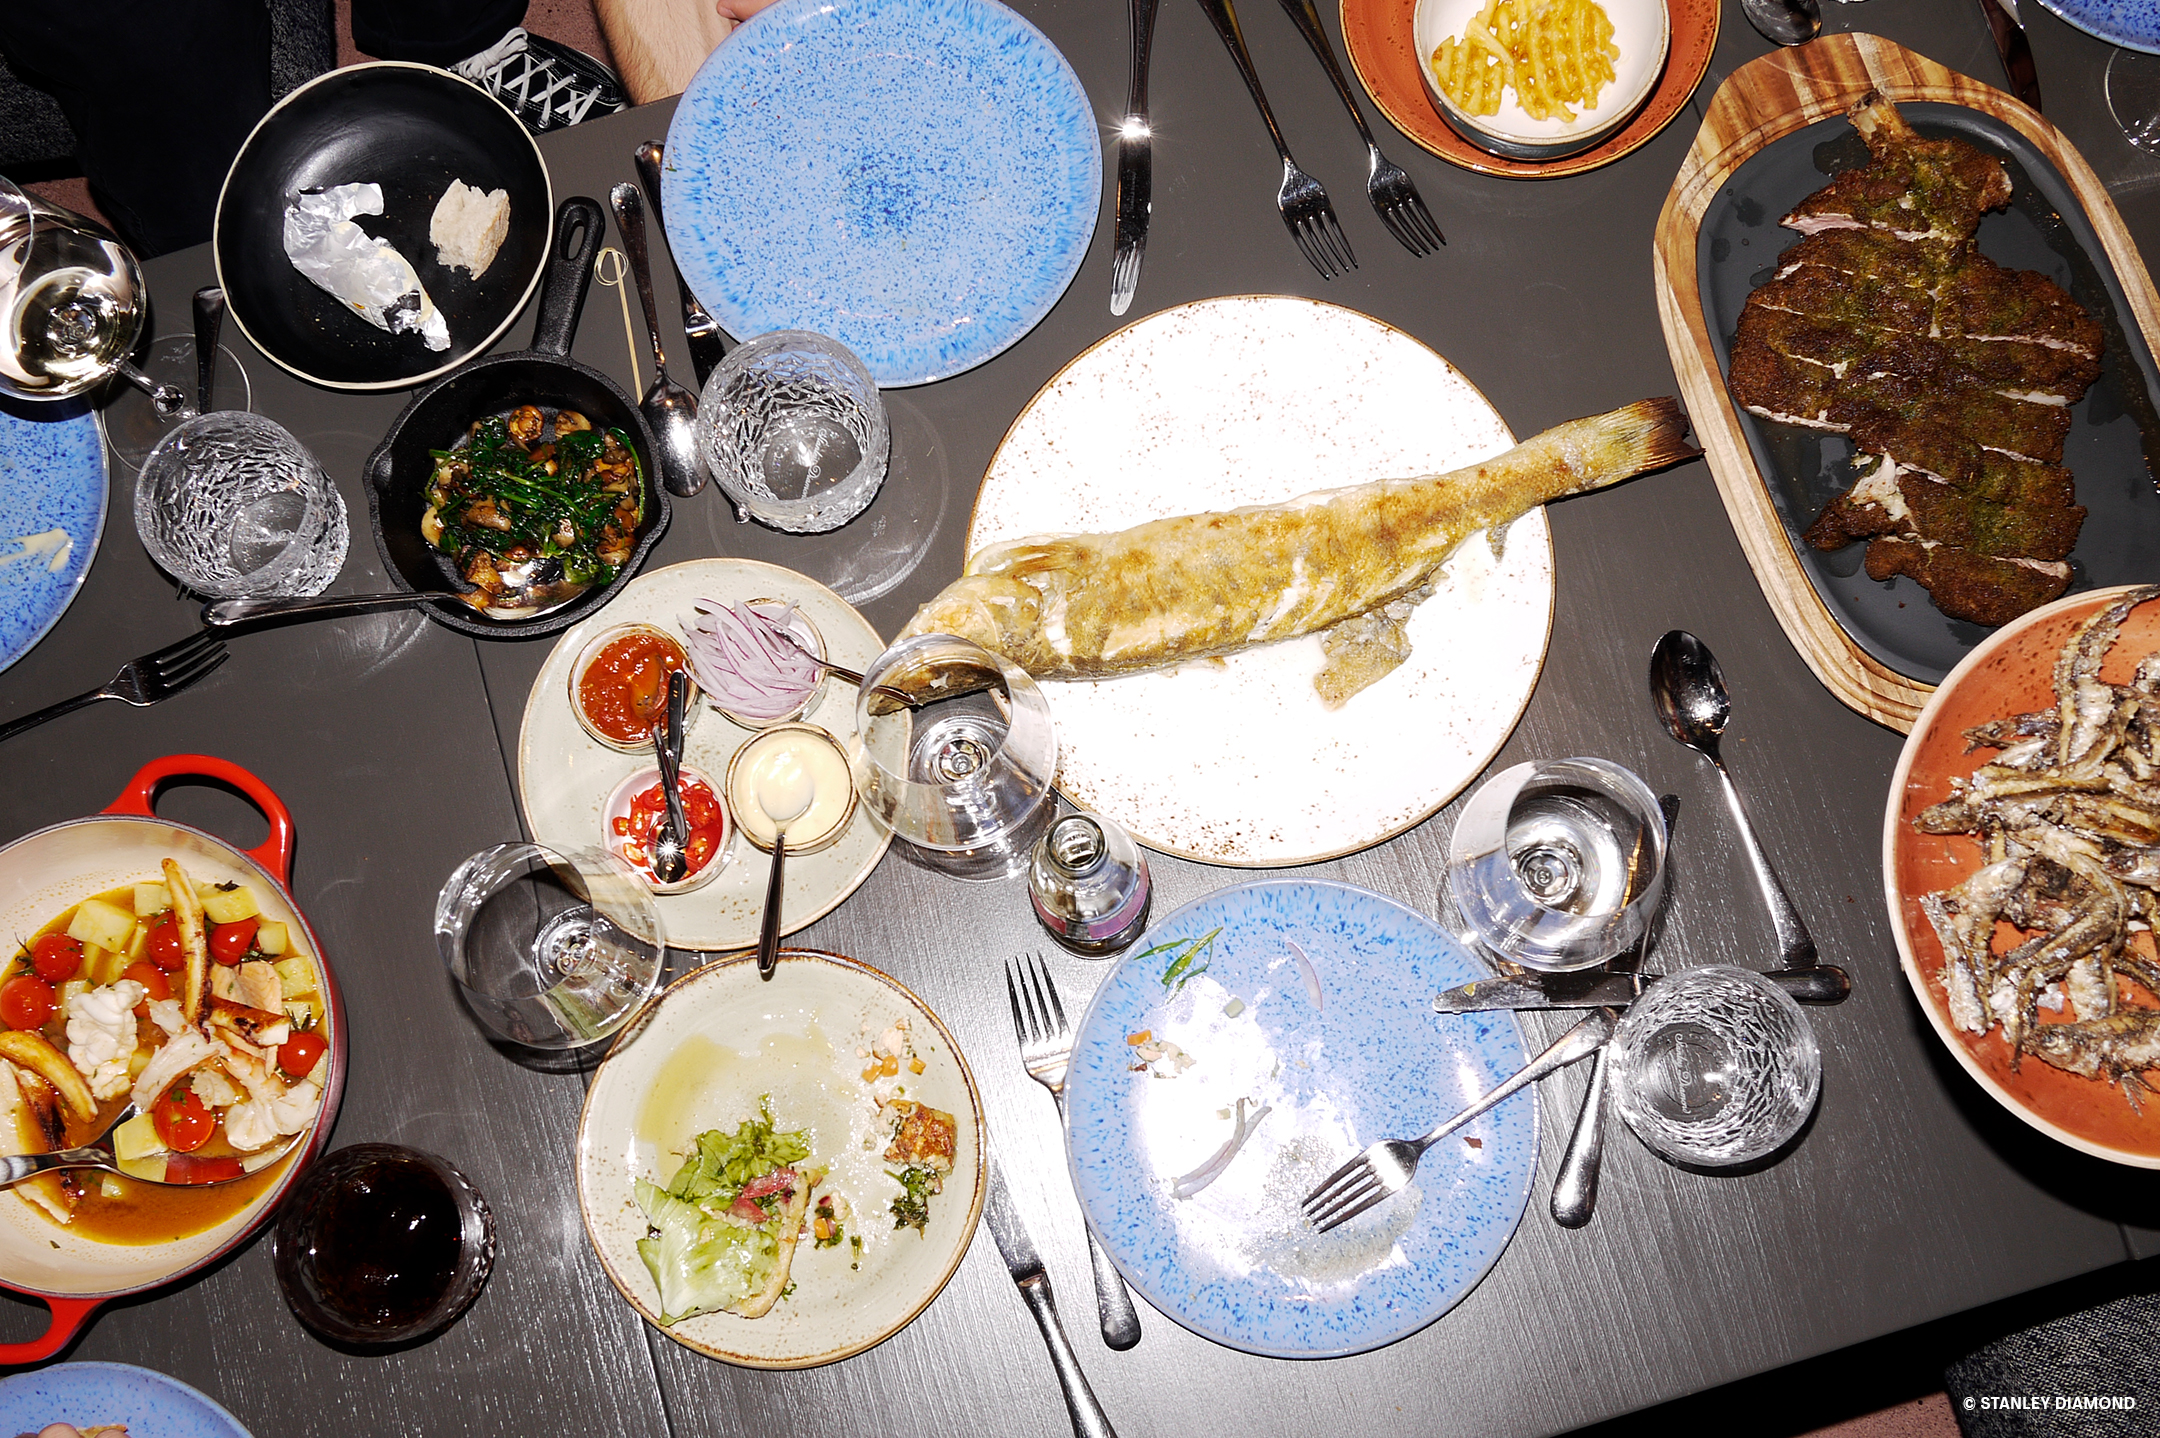 Dunkler Tisch auf dem leer gegessene Teller und Schalen und Platten mit verschiedenen Gerichten wie Fisch und Salat stehen